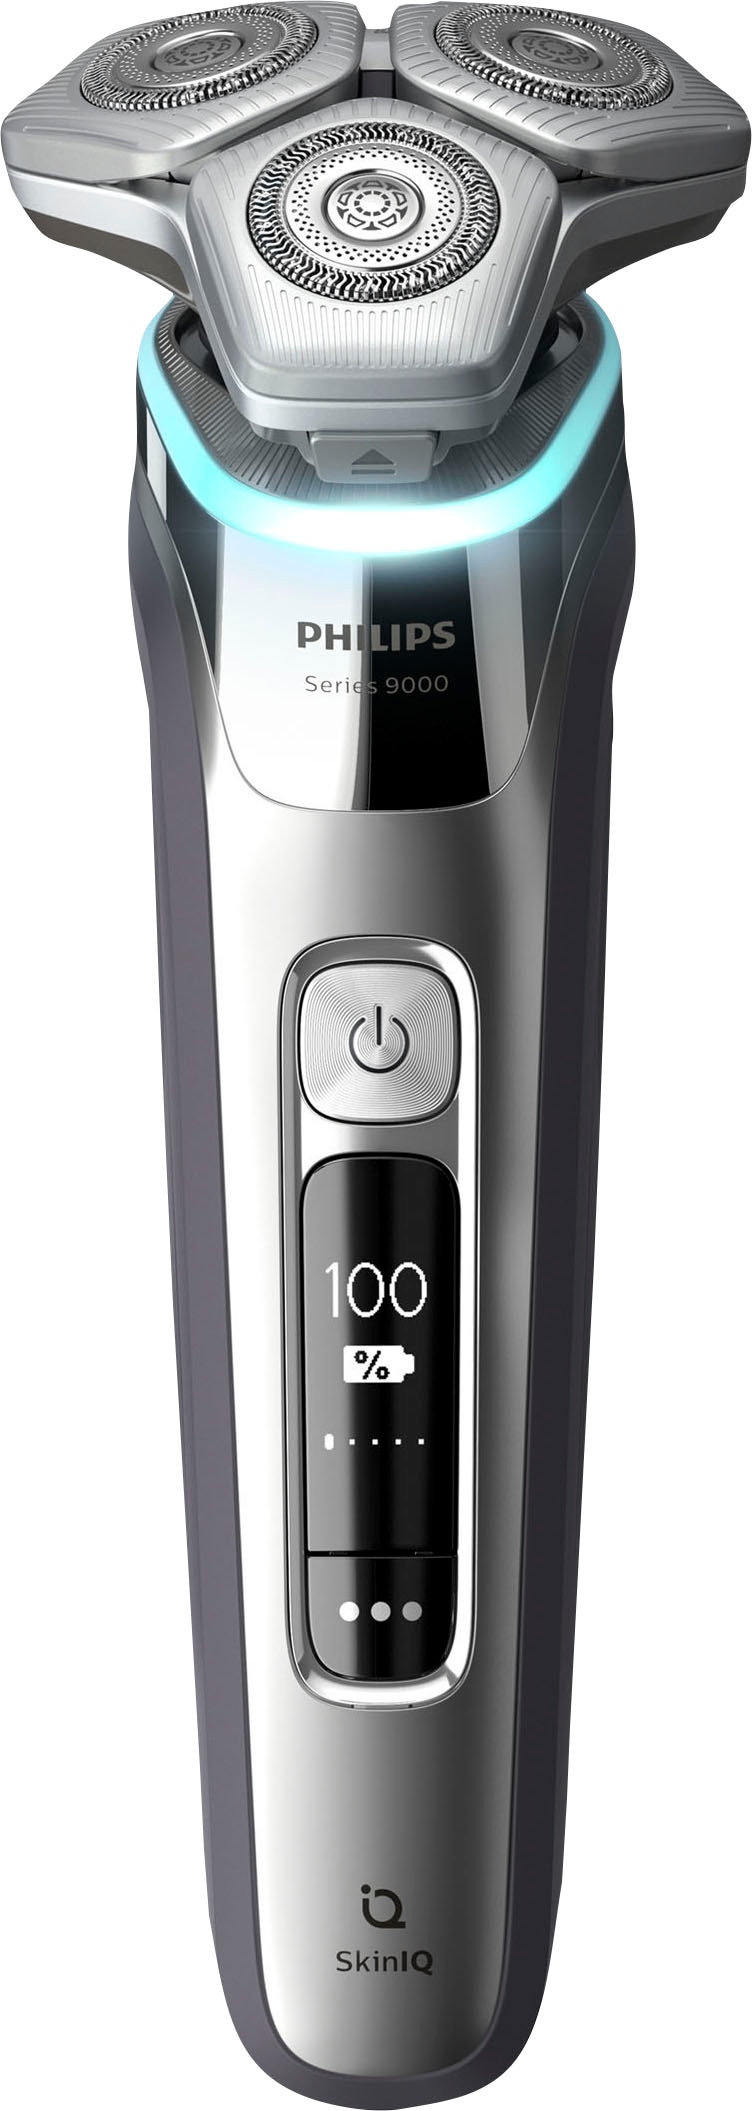 SkinIQ 9000 S9974/35«, Technologie XXL Ladestand mit mit Elektrorasierer Philips und ausklappbarer Jahren Series Garantie Etui, Präzisionstrimmer, »Shaver 3